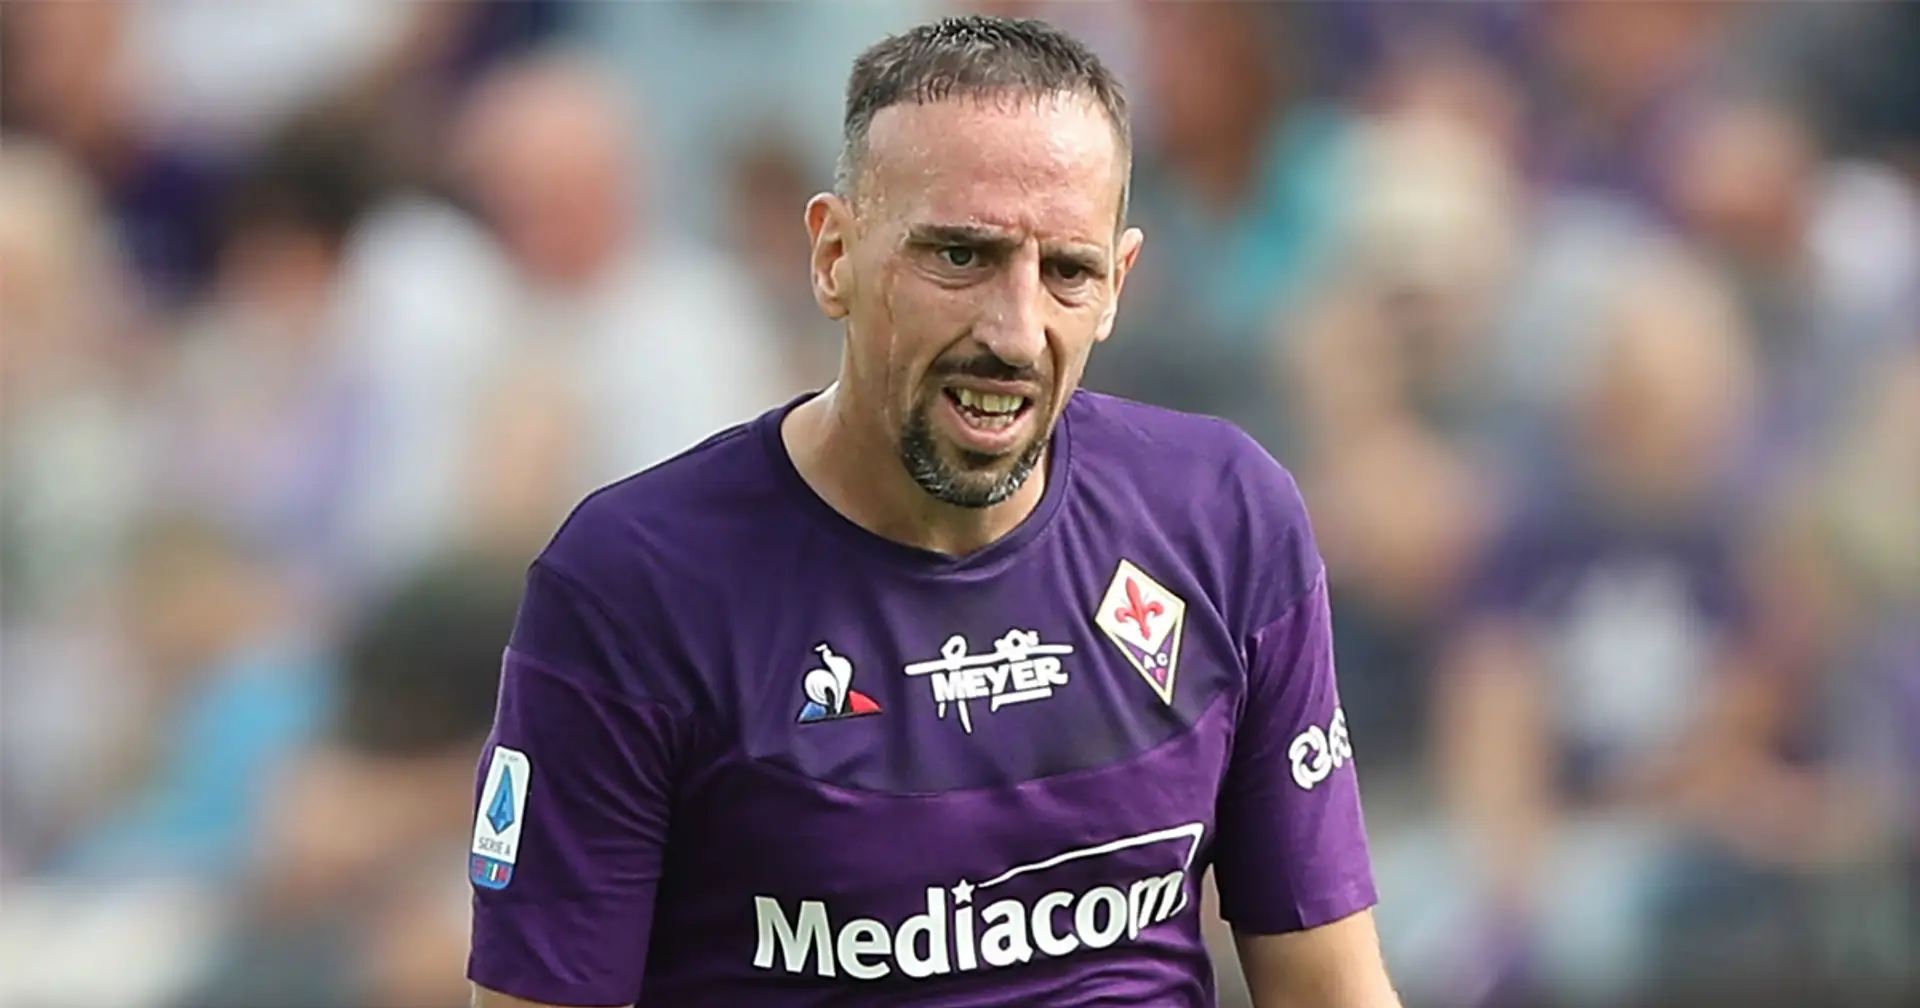 Cambriolé à son domicile de Florence ce dimanche, Ribéry annonce qu'il va prendre "les décisions nécessaires"